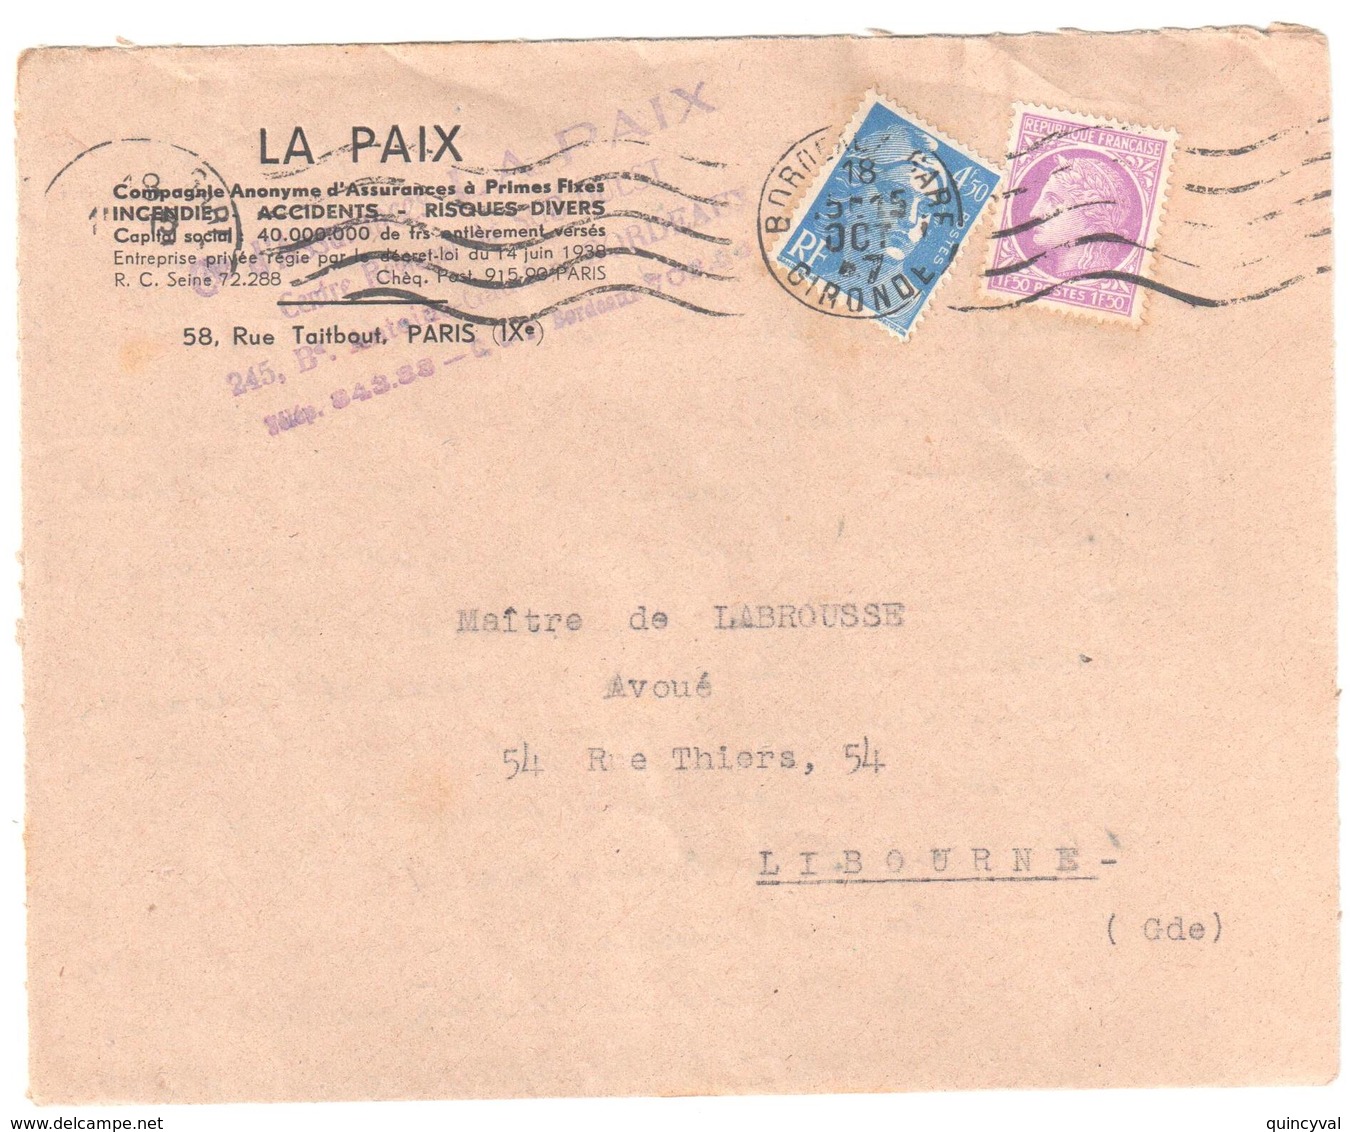 BORDEAUX Gare Gironde Lettre Entête Assurances LA PAIX 4,50F Gandon 1,50 F Mazelin Yv 718A 679 Ob 18 10 1947 - Lettres & Documents